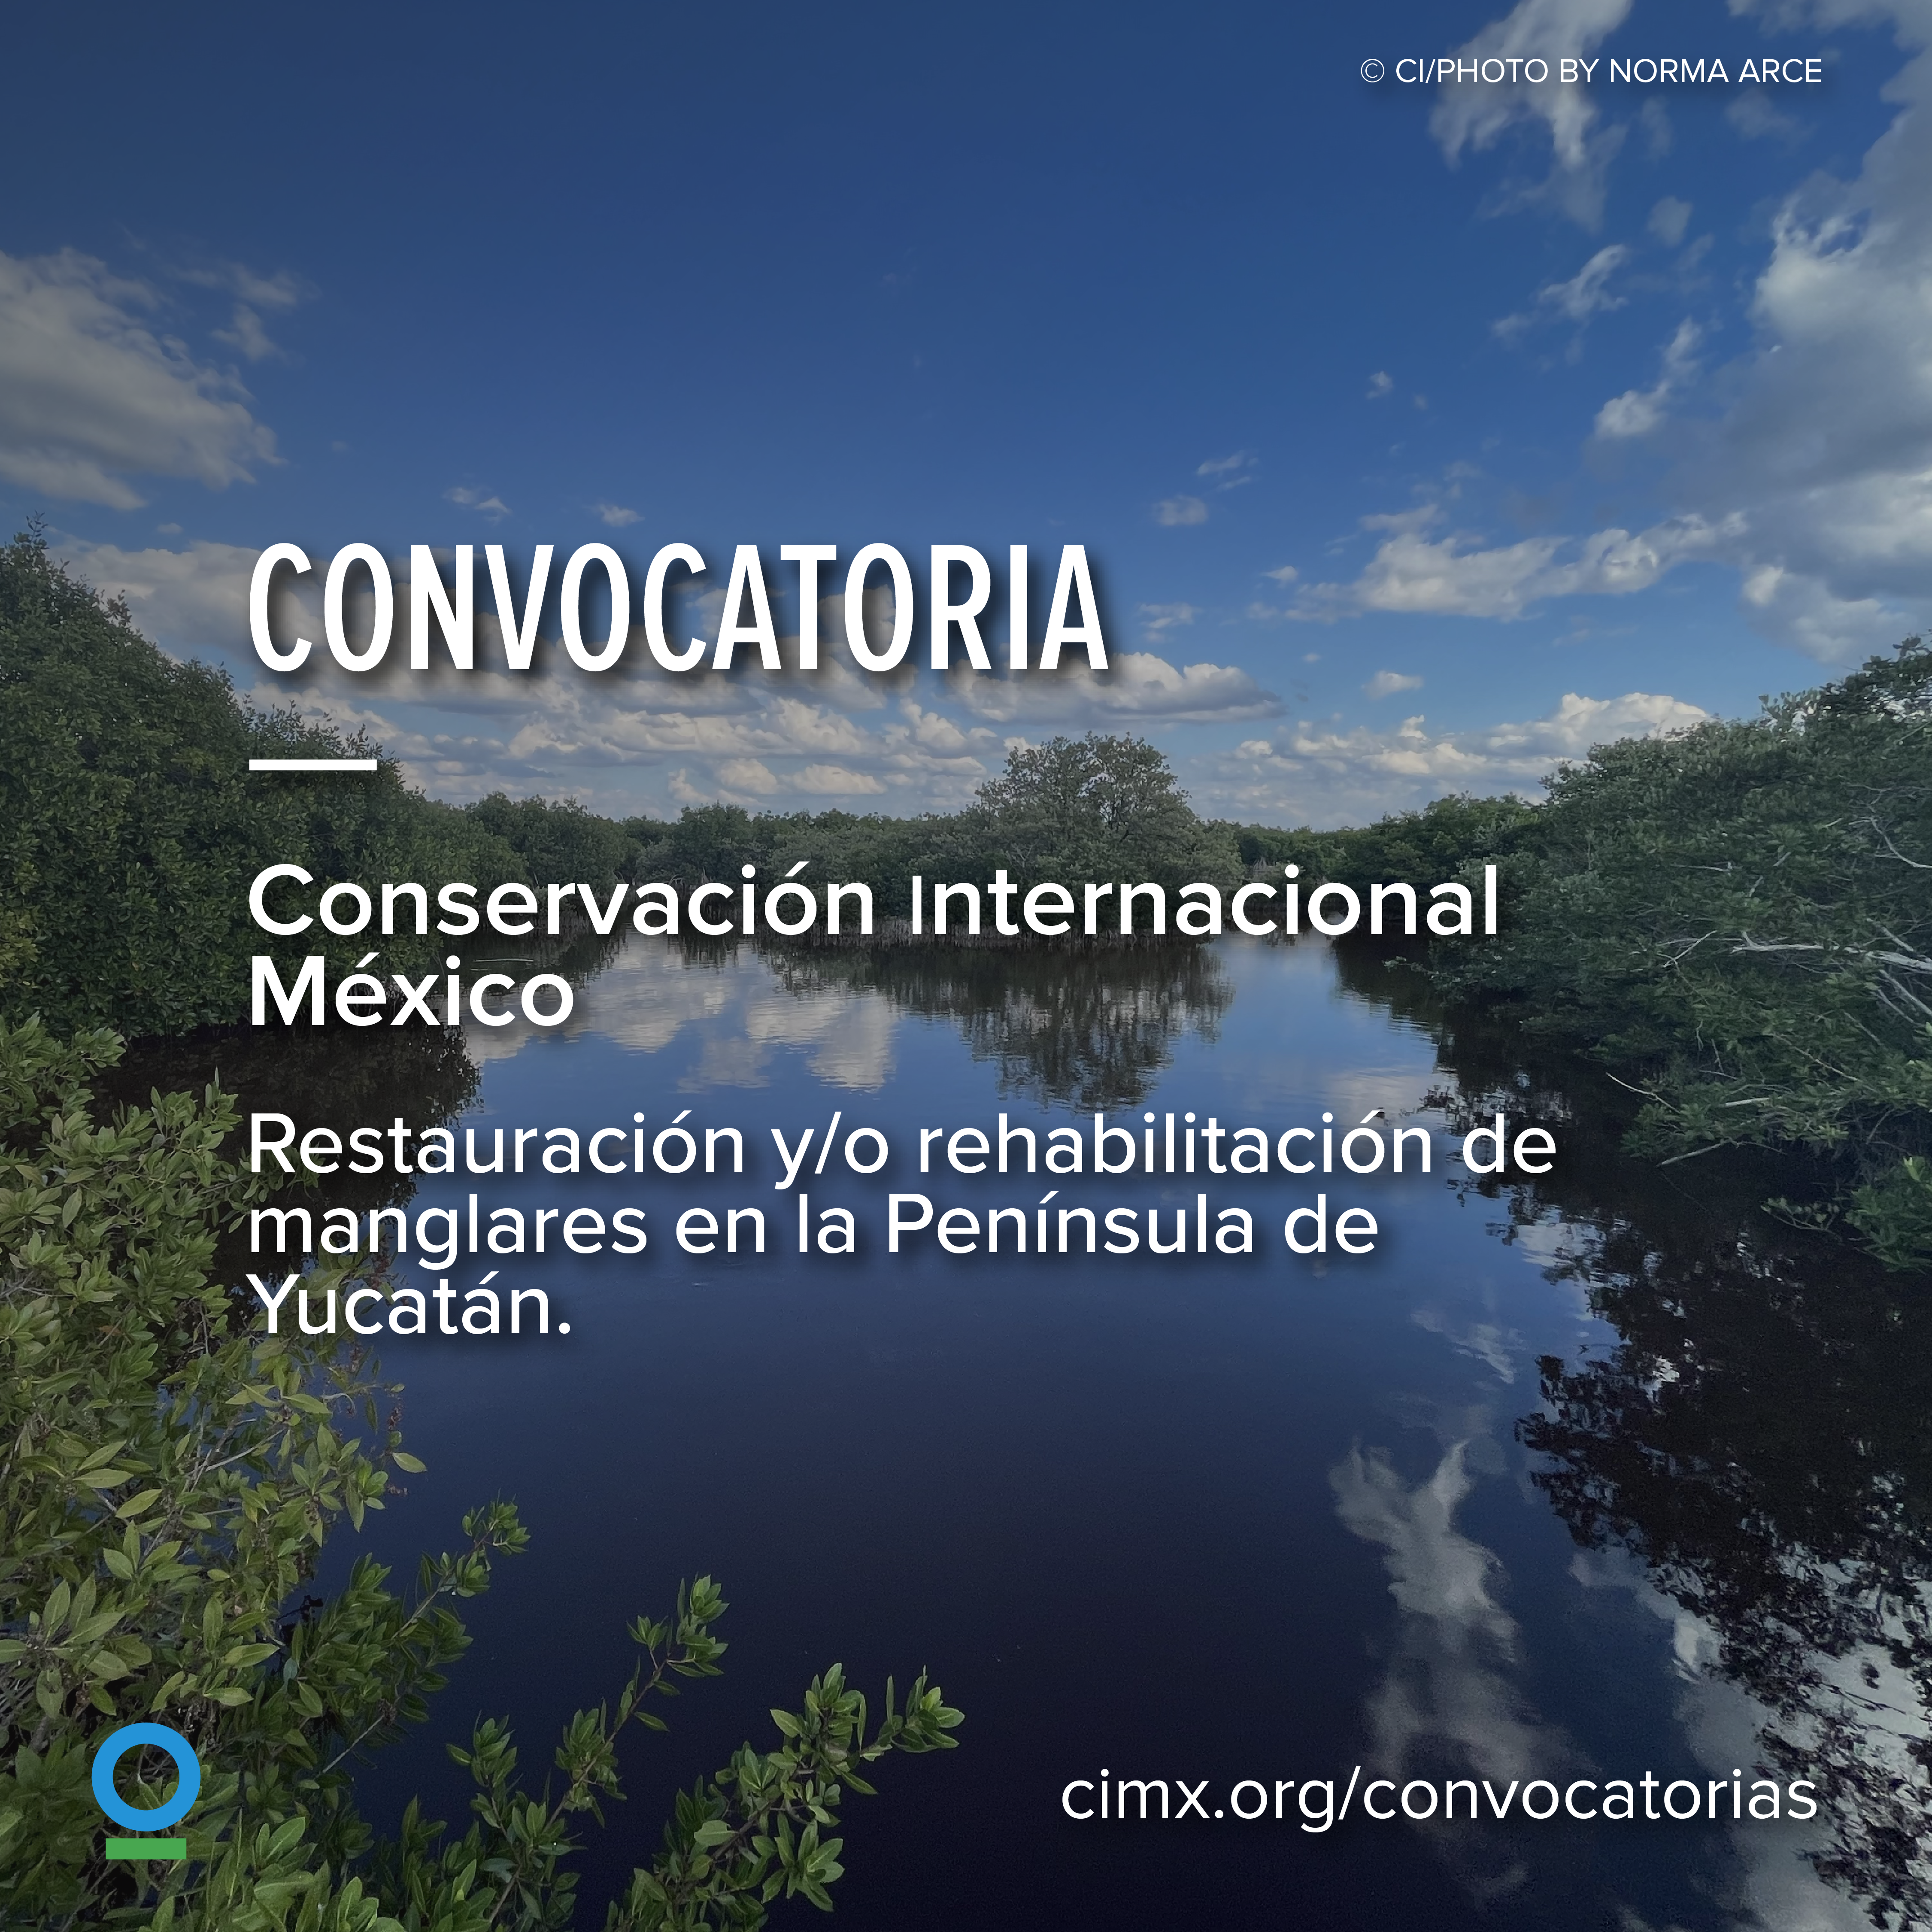 Restauración y/o rehabilitación de manglares en la Península de Yucatán (Conservation International)